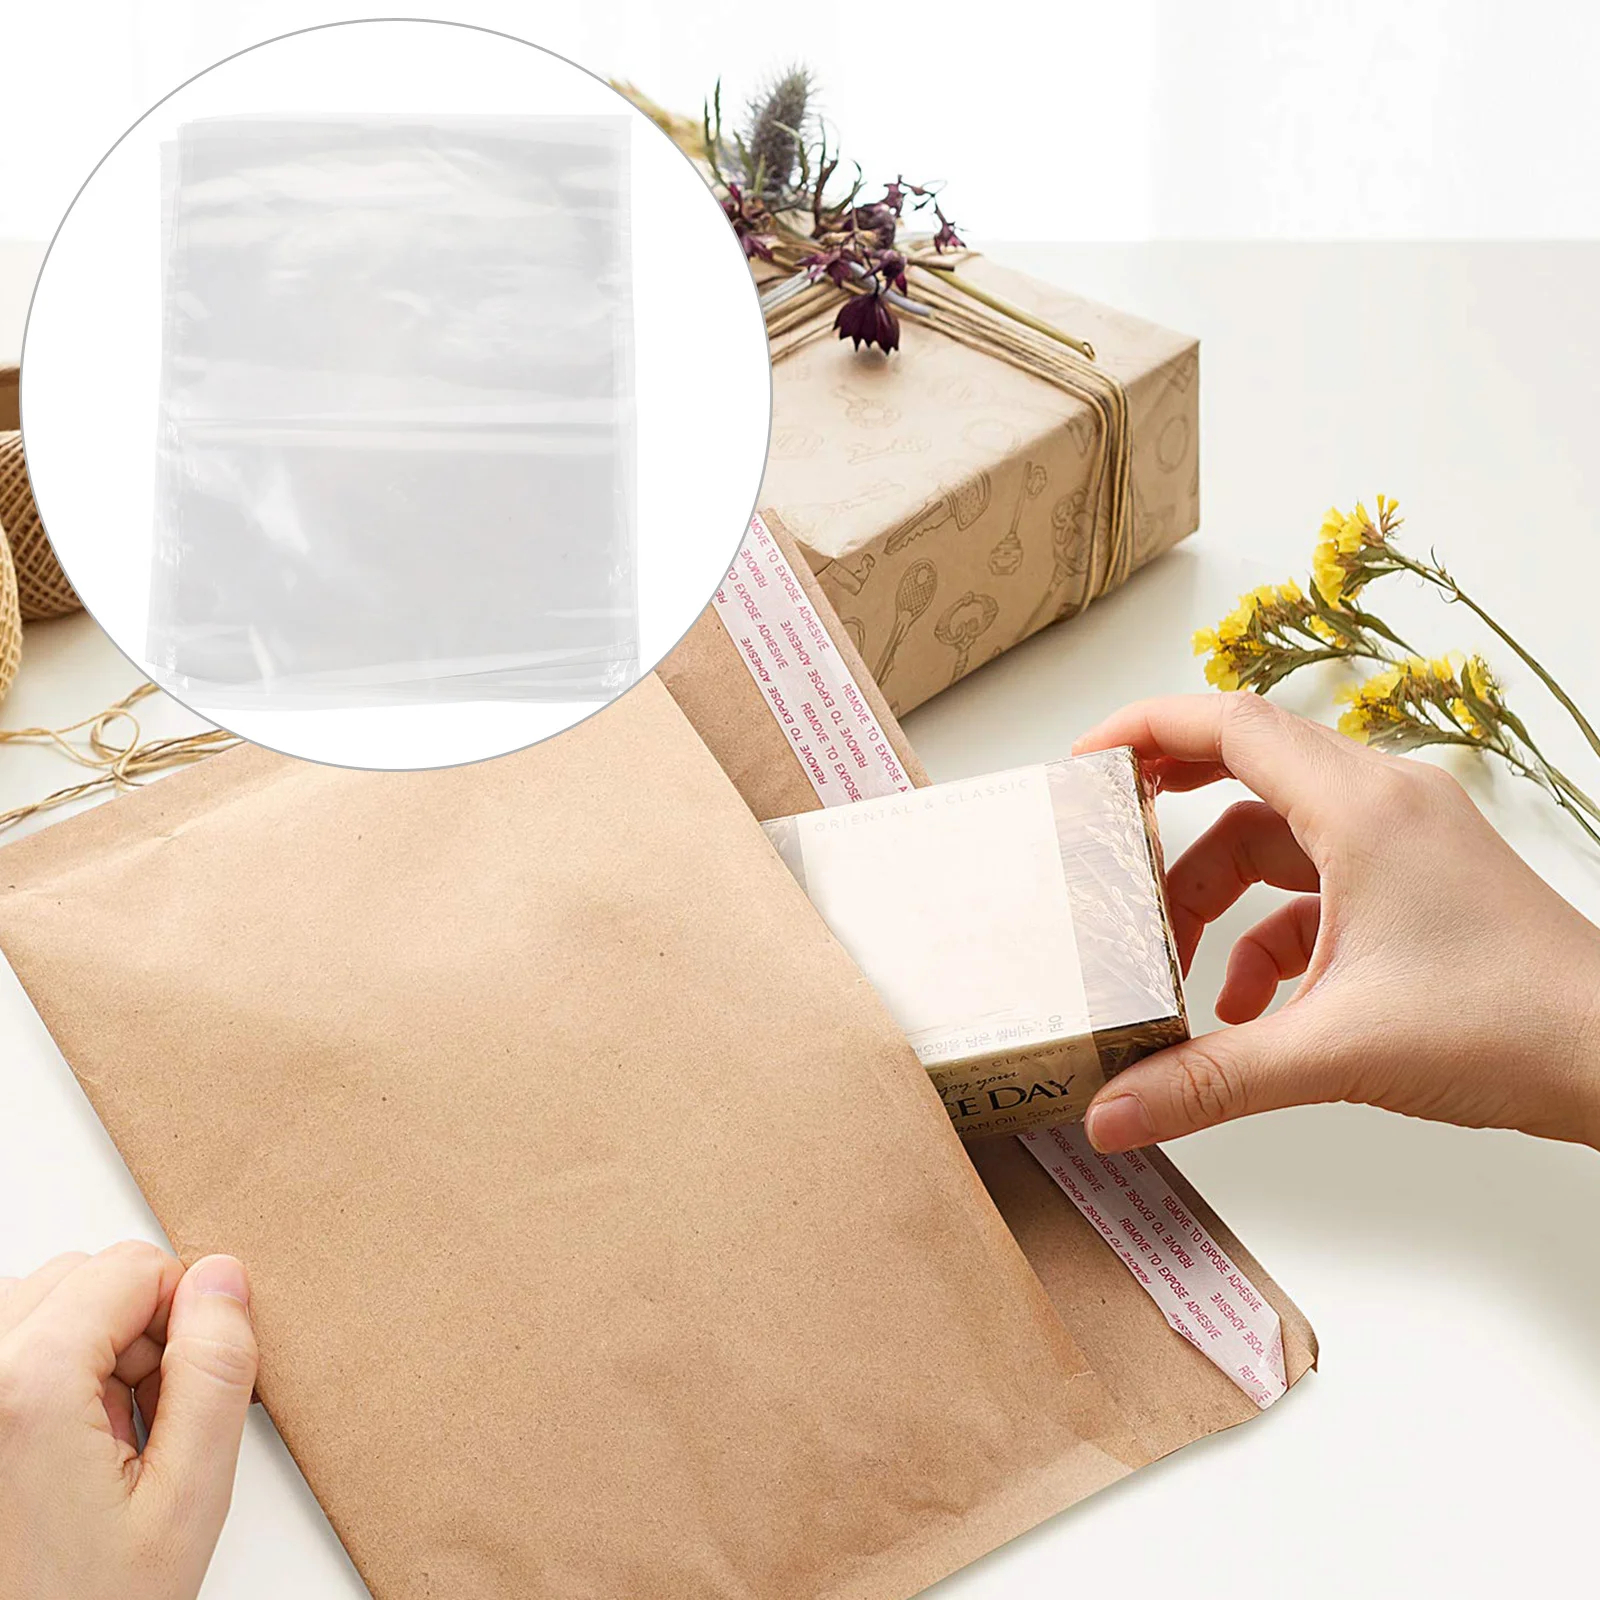 

200 Pcs Heat Shrink Film Bag Wrap Bags Vaccum Seal Take Bath Fresh Keeping New Material Vacuum Sealer Machine